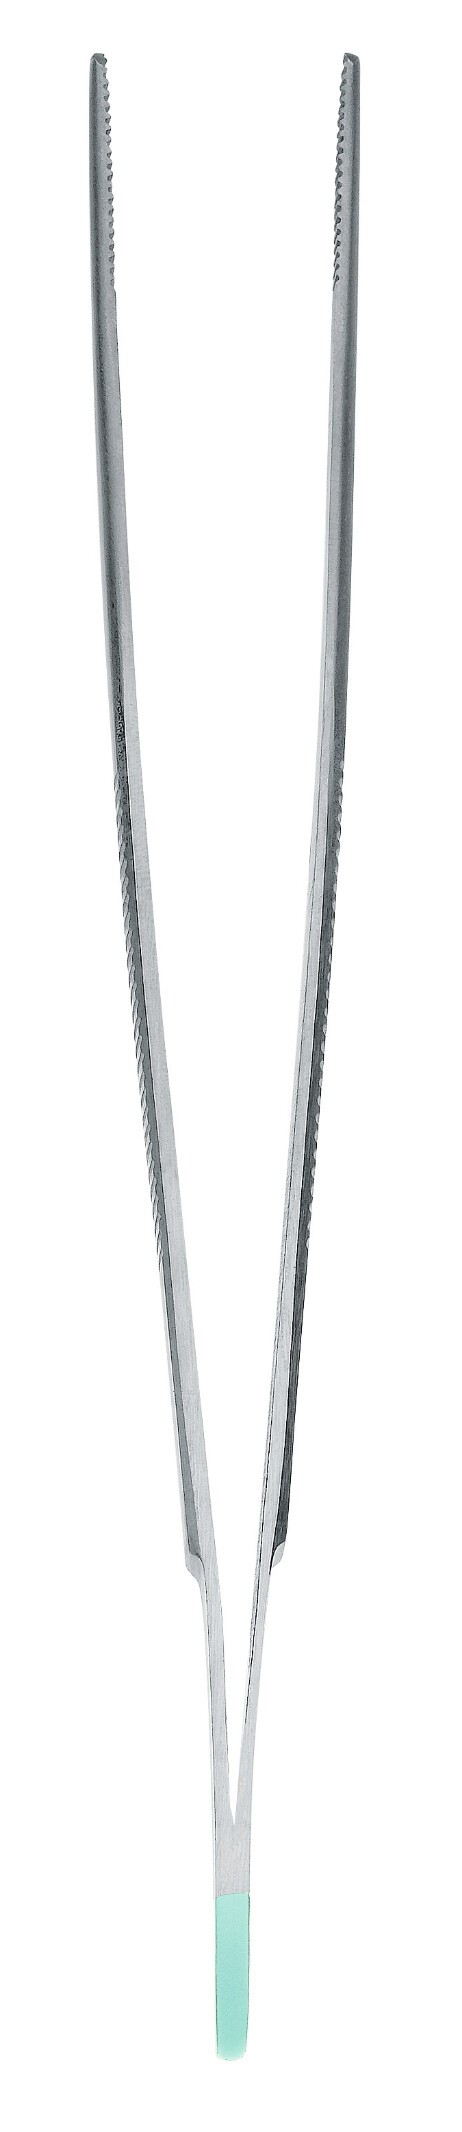 Instrument pour taches de rousseur pince à épiler standard anatomiquement droite 14cm